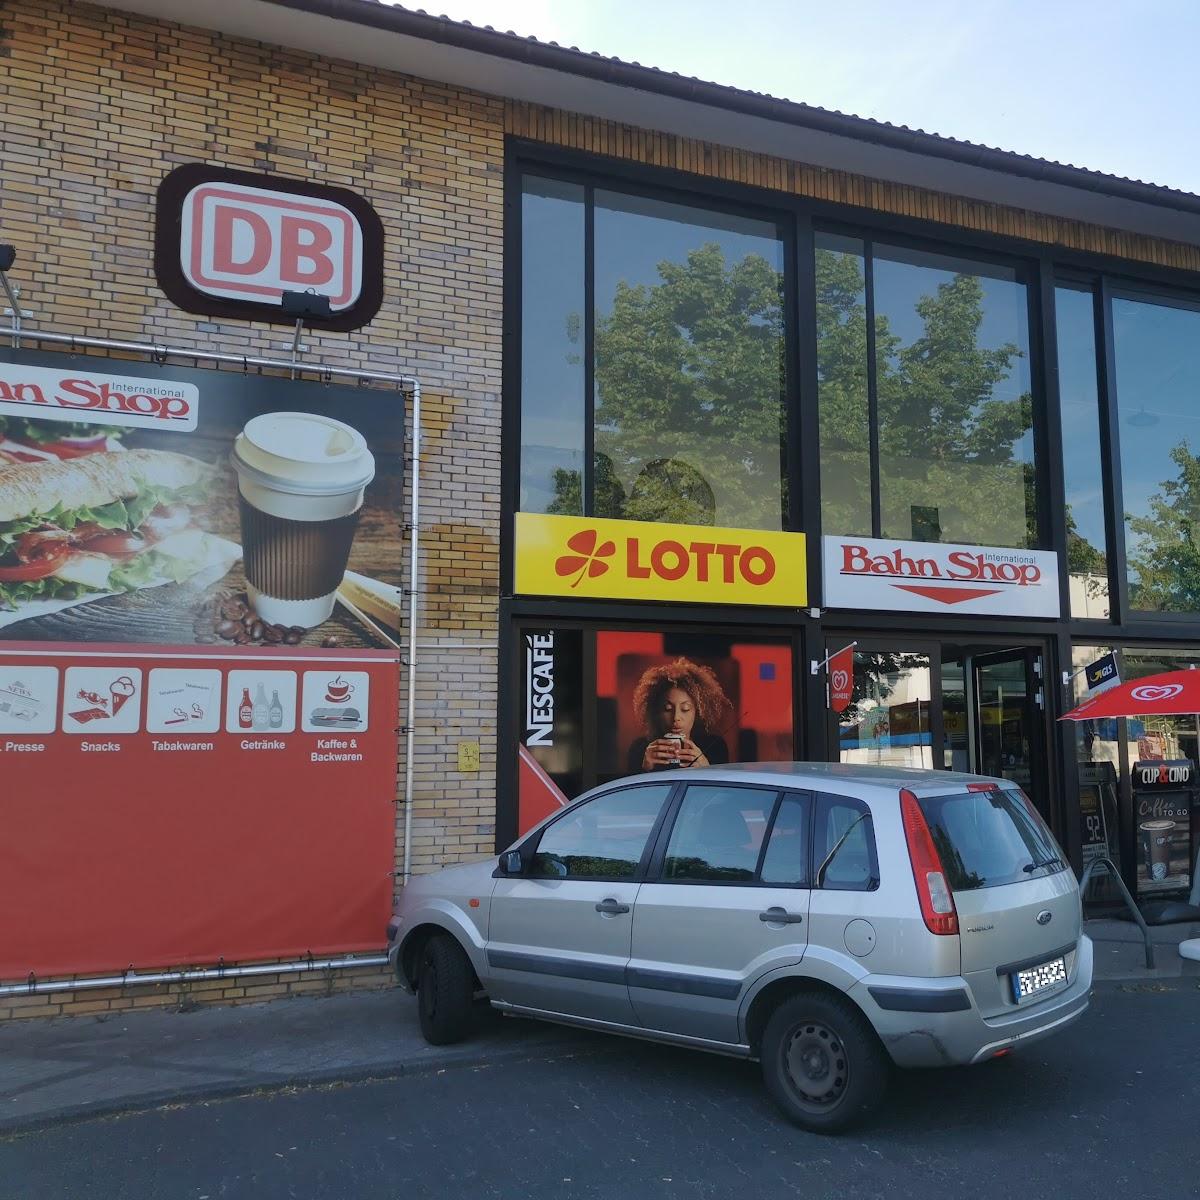 Restaurant "Bahn-Shop International" in Betzdorf